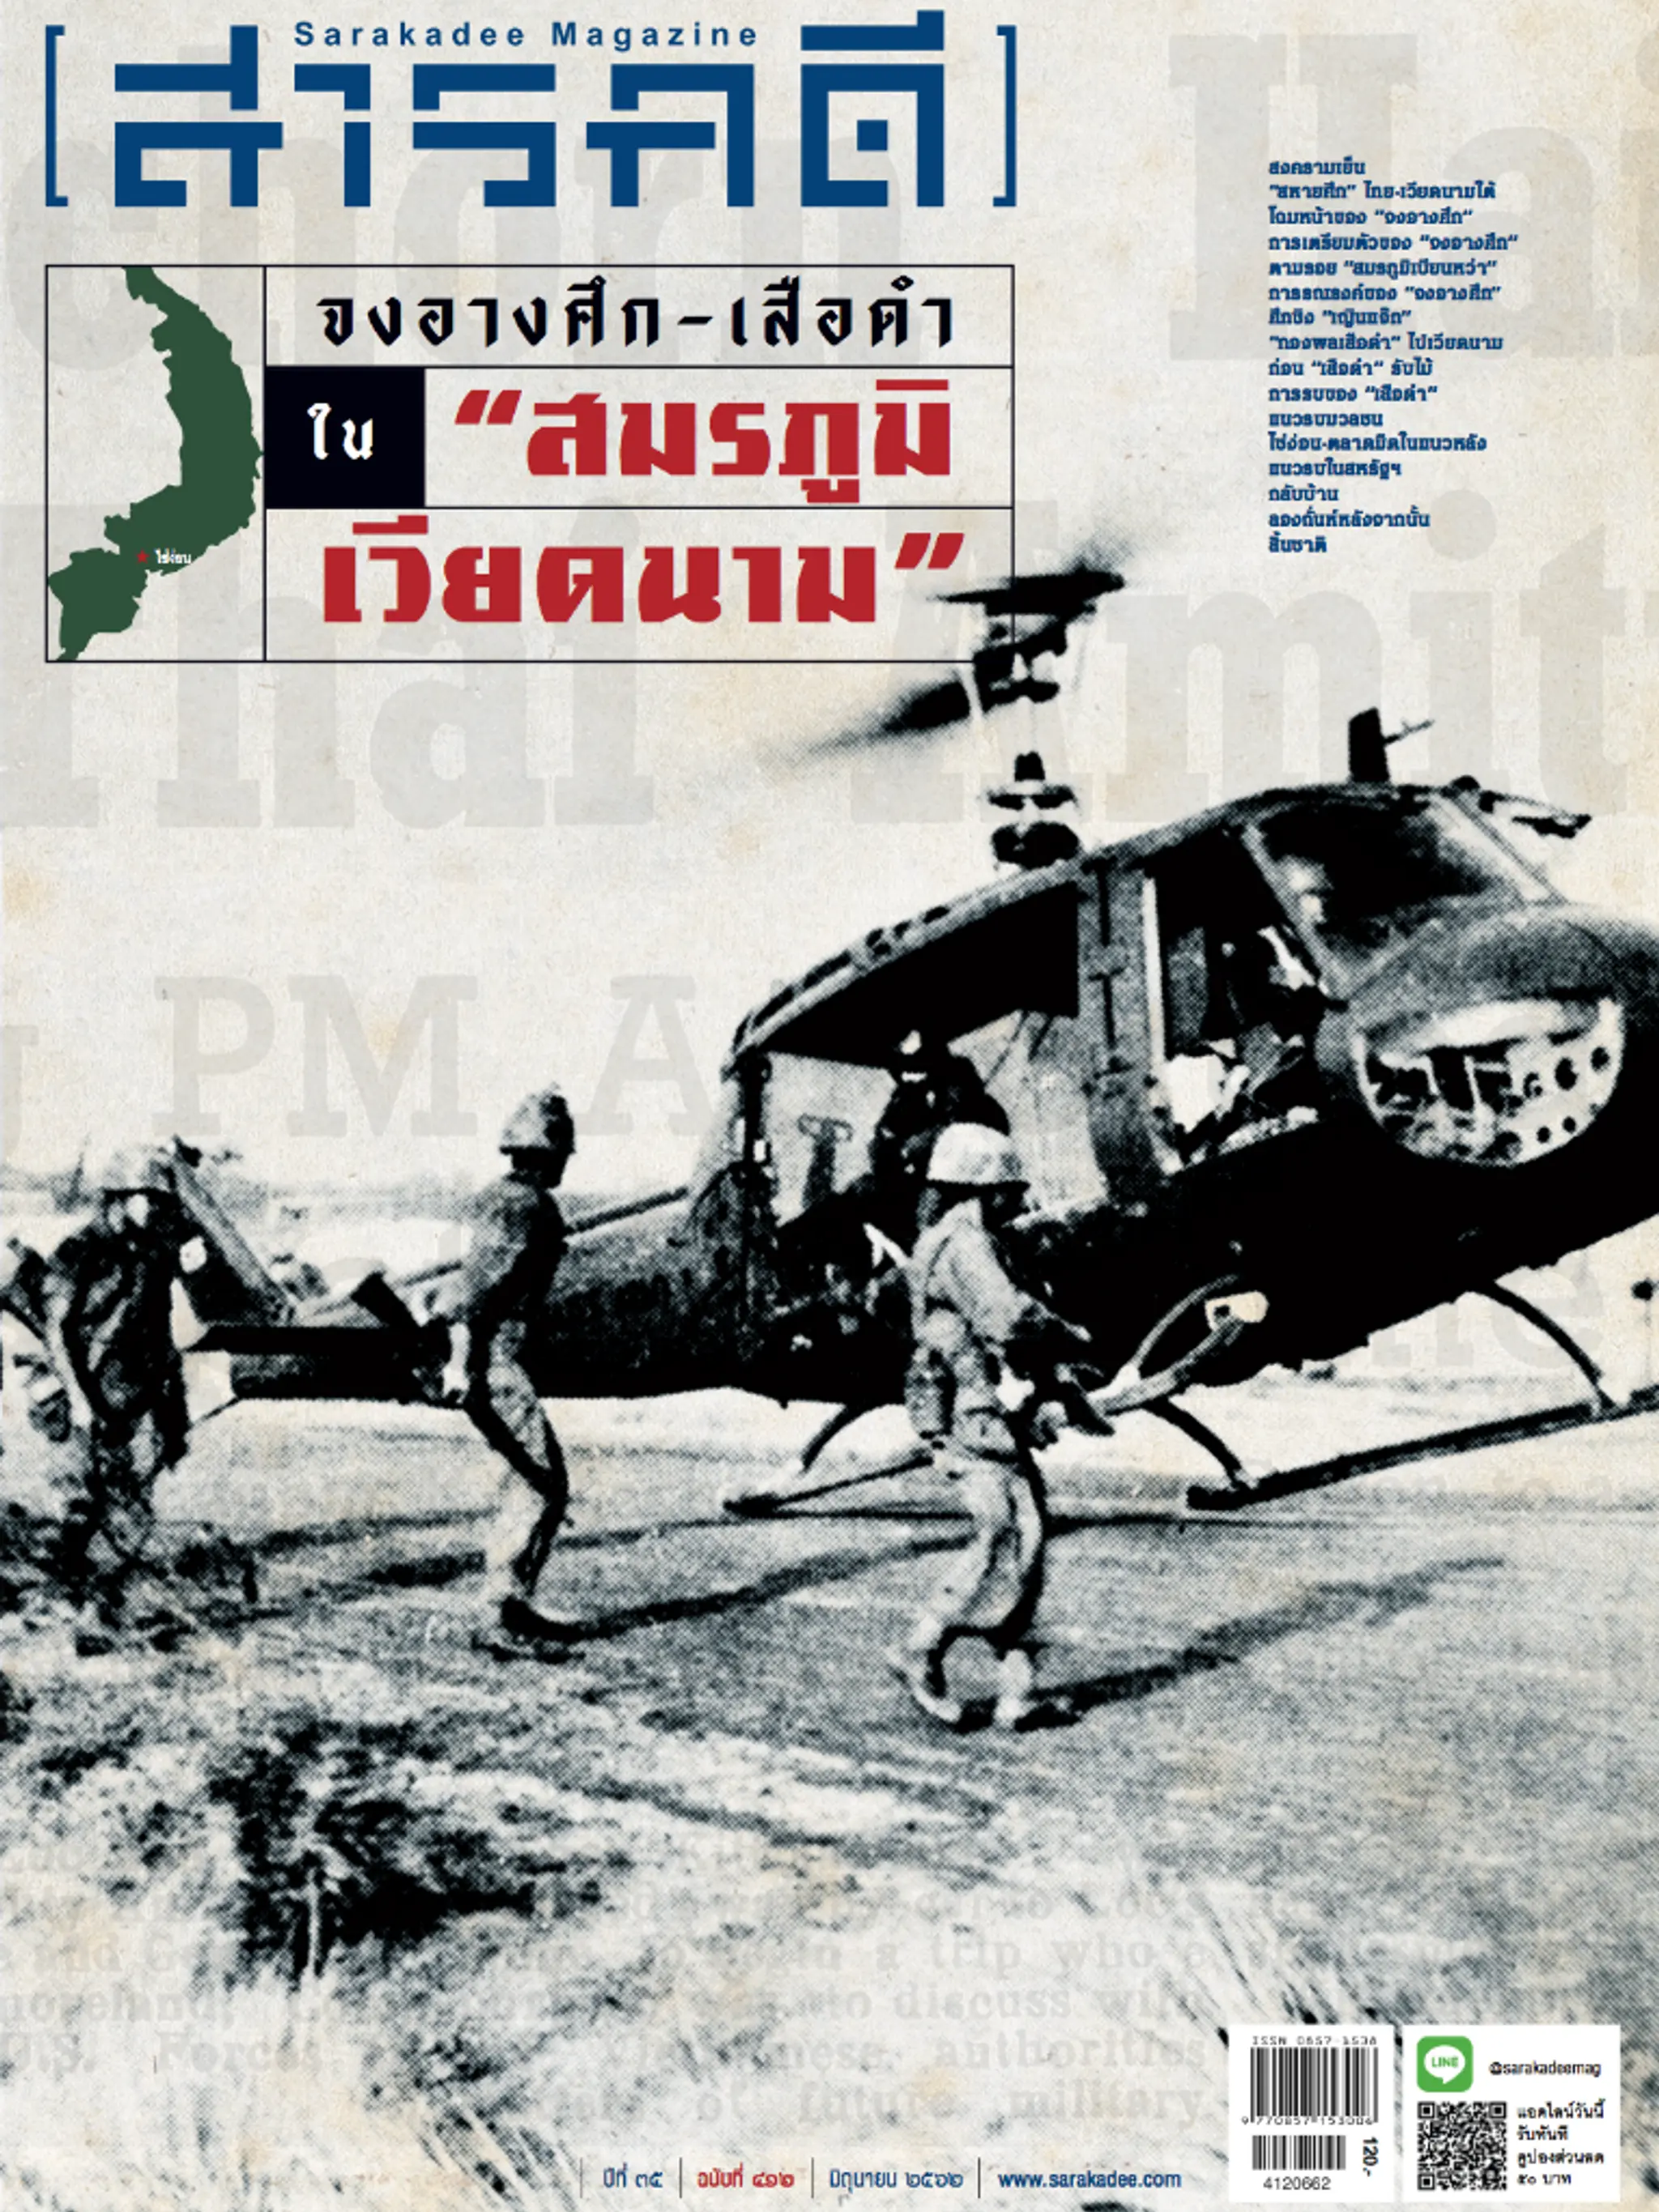 412 ทหารไทยใน Vietnam War จงอางศึก-เสือดำ